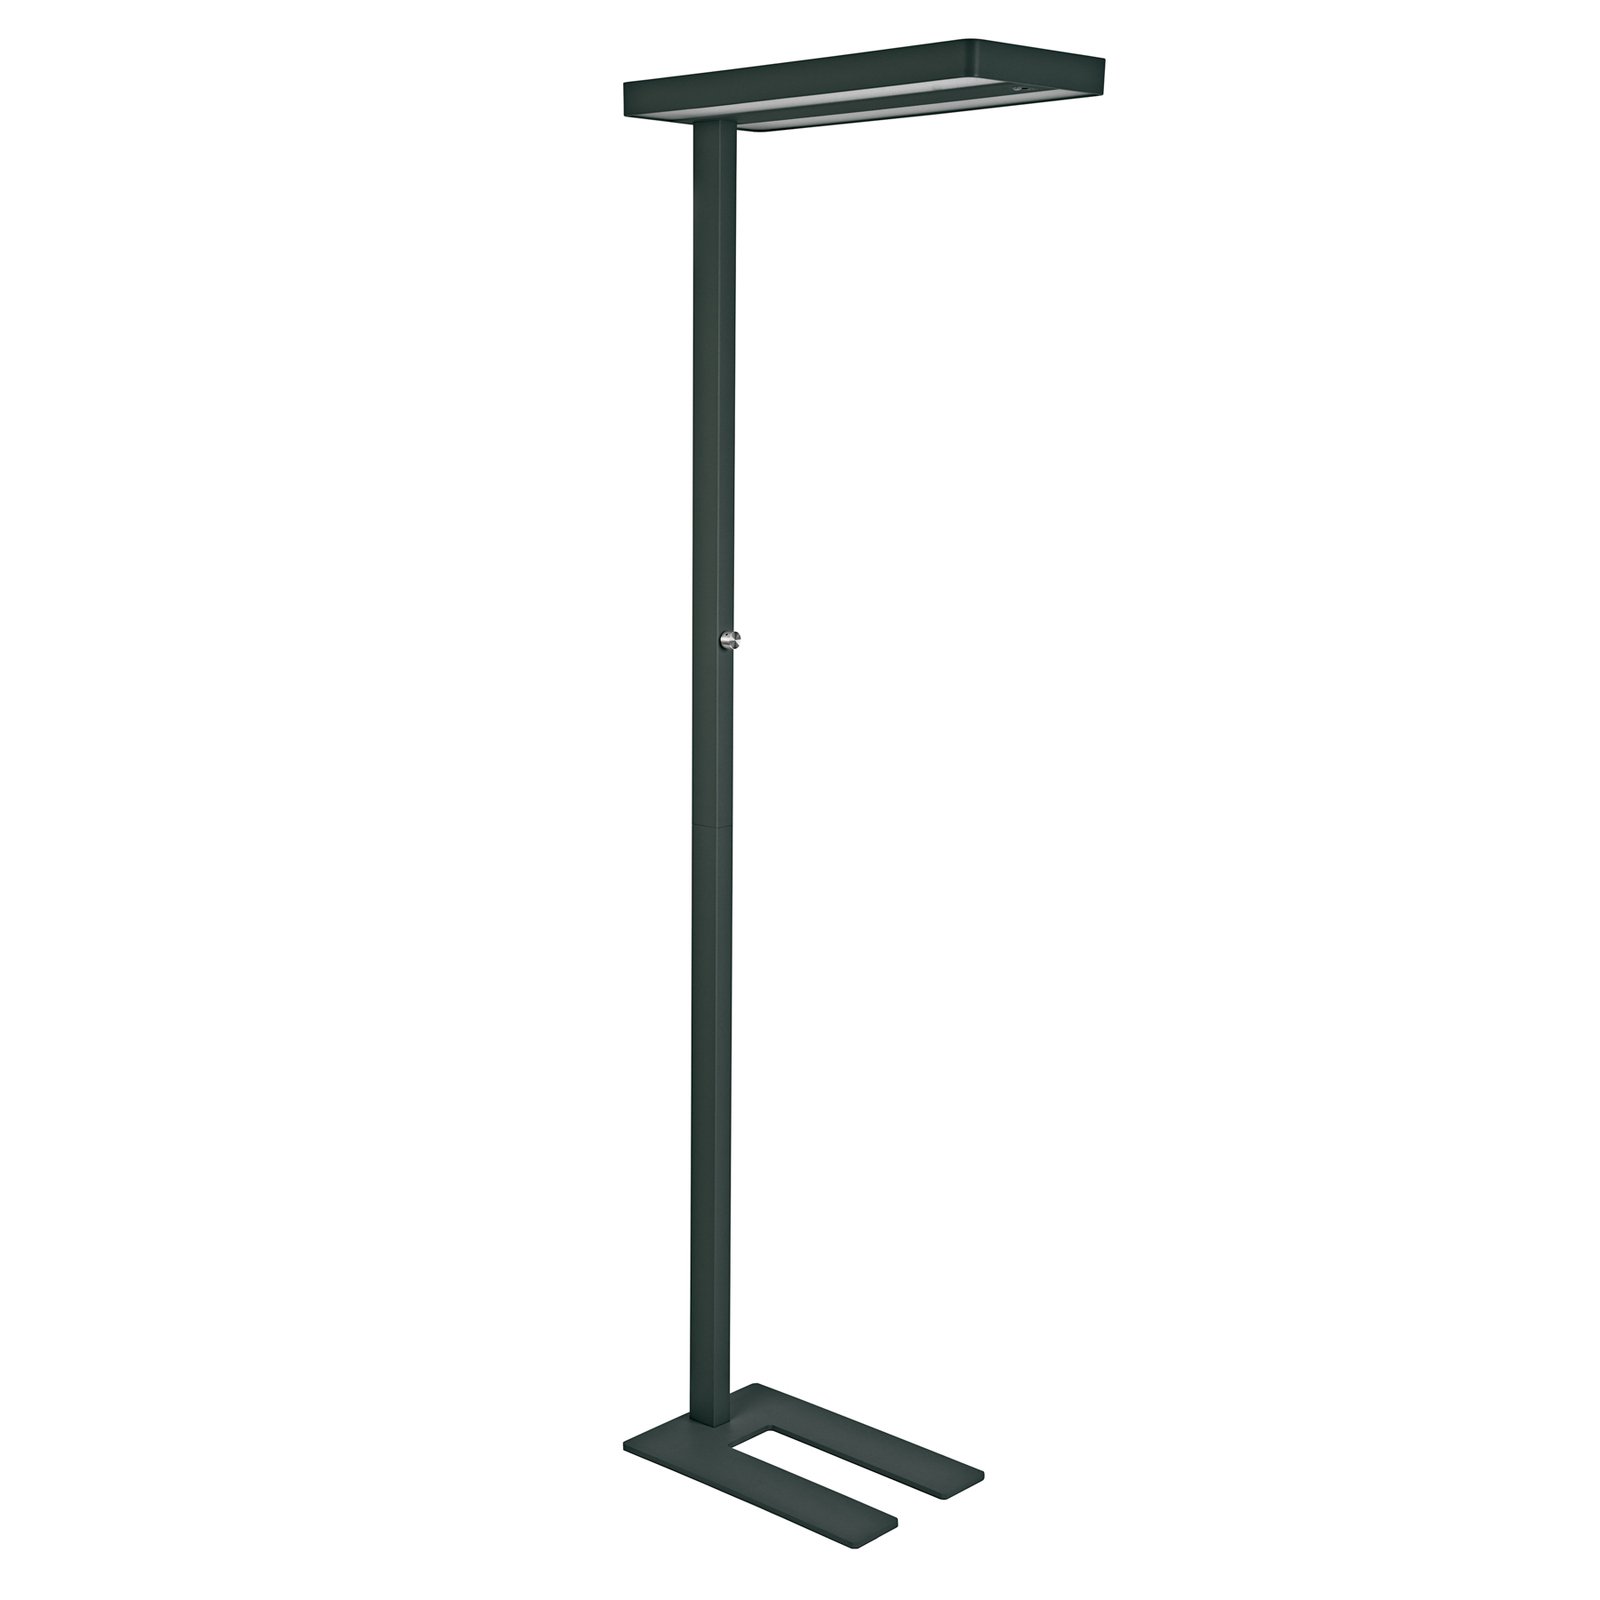 Lampa stojąca LED MAULjuvis, czarna, stojak